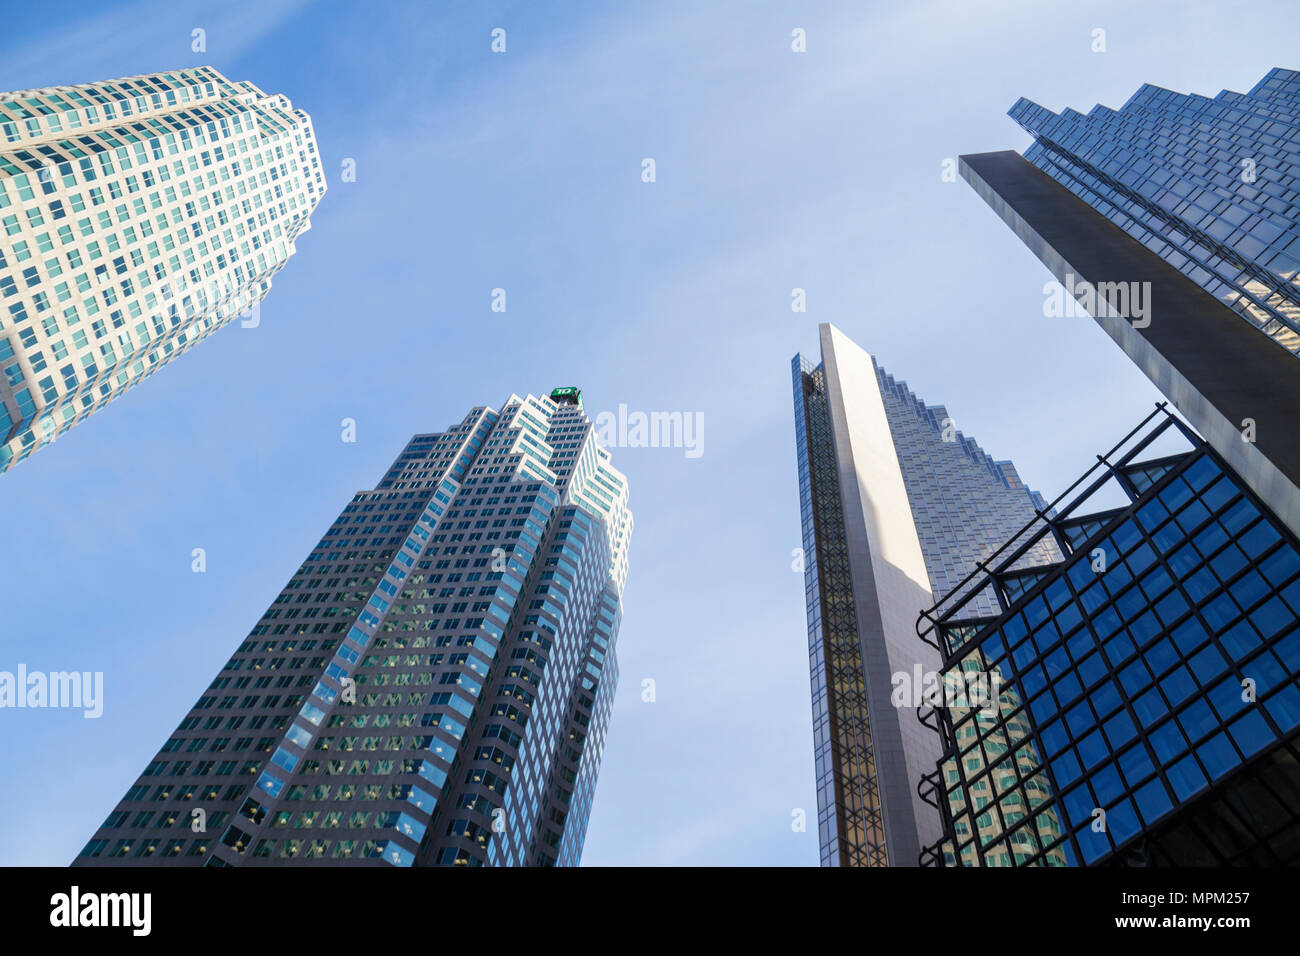 Toronto Kanada, Wellington Street West, Royal Bank Plaza, moderne Architektur, Wolkenkratzer, Gebäude, Skyline der Stadt, Stadtbild, vertikale Linien, Formen, Höhe, s Stockfoto